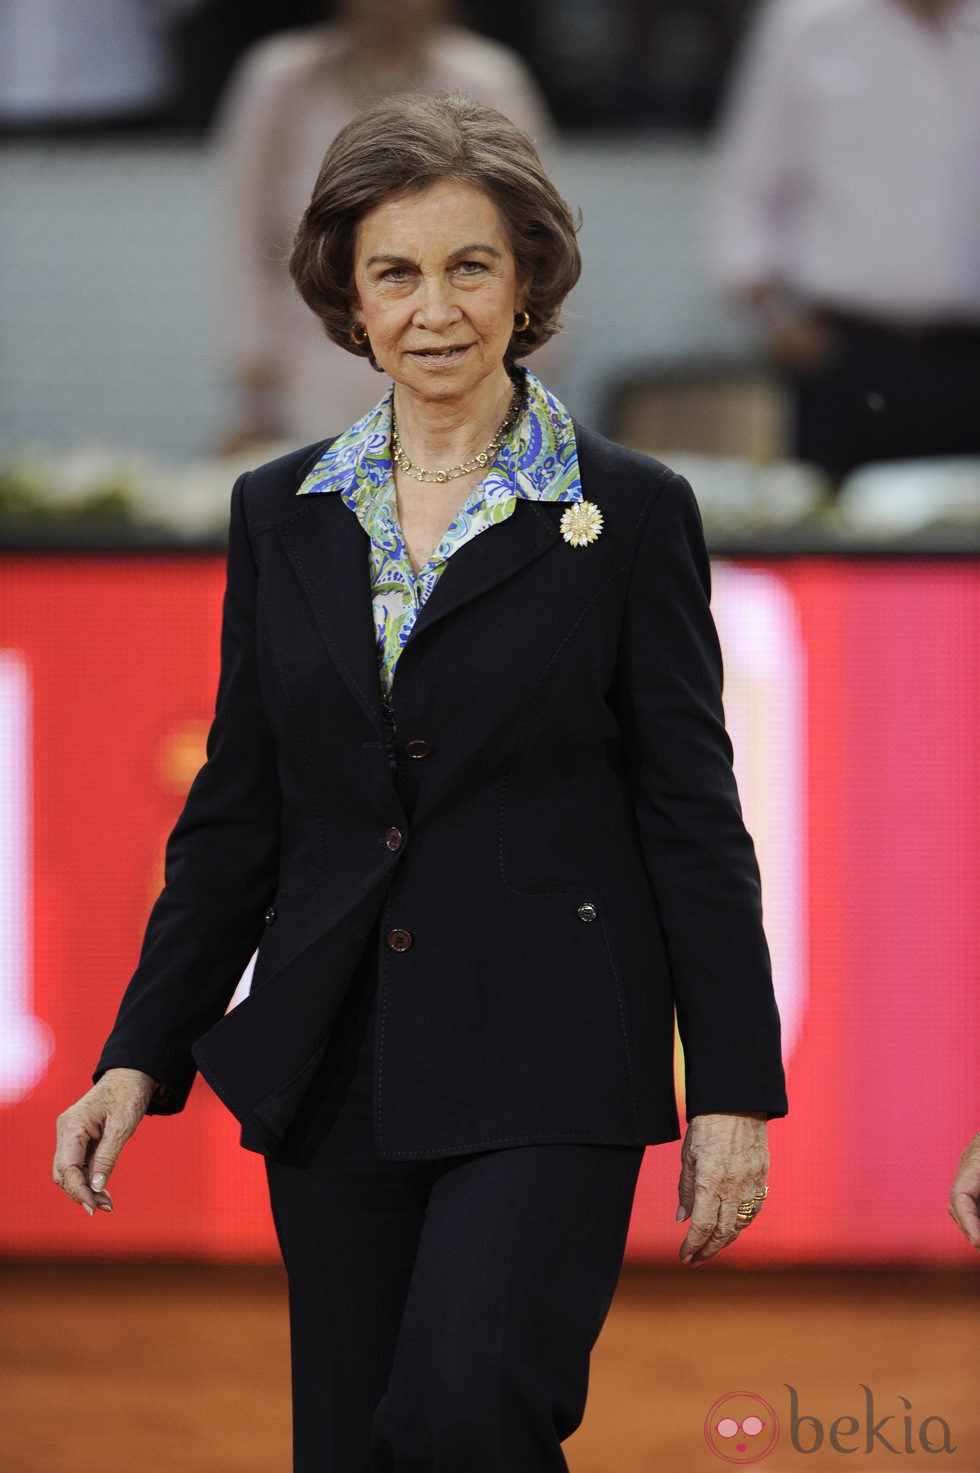 La Reina Sofía en la final del Madrid Open 2014